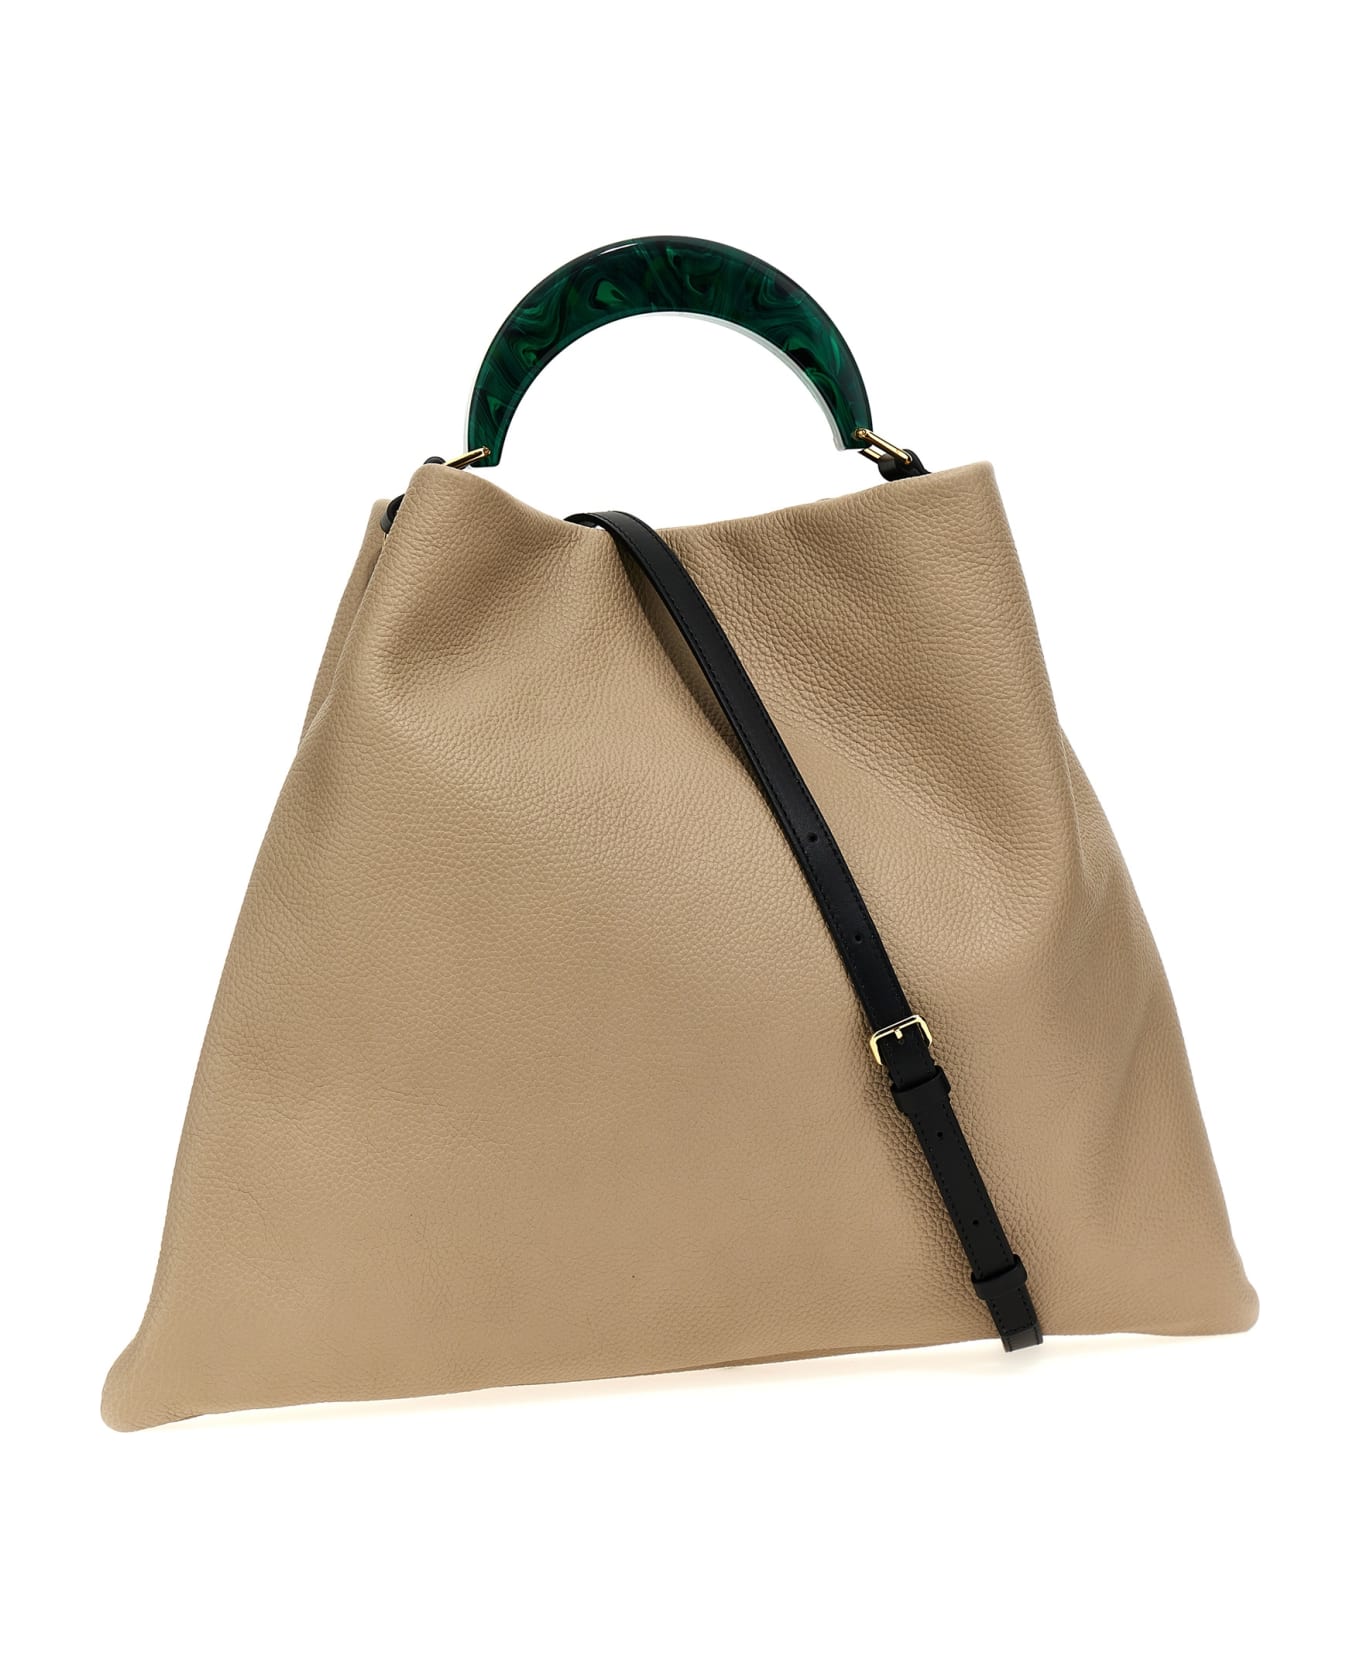 Marni 'venice Medium' Handbag - Beige トートバッグ